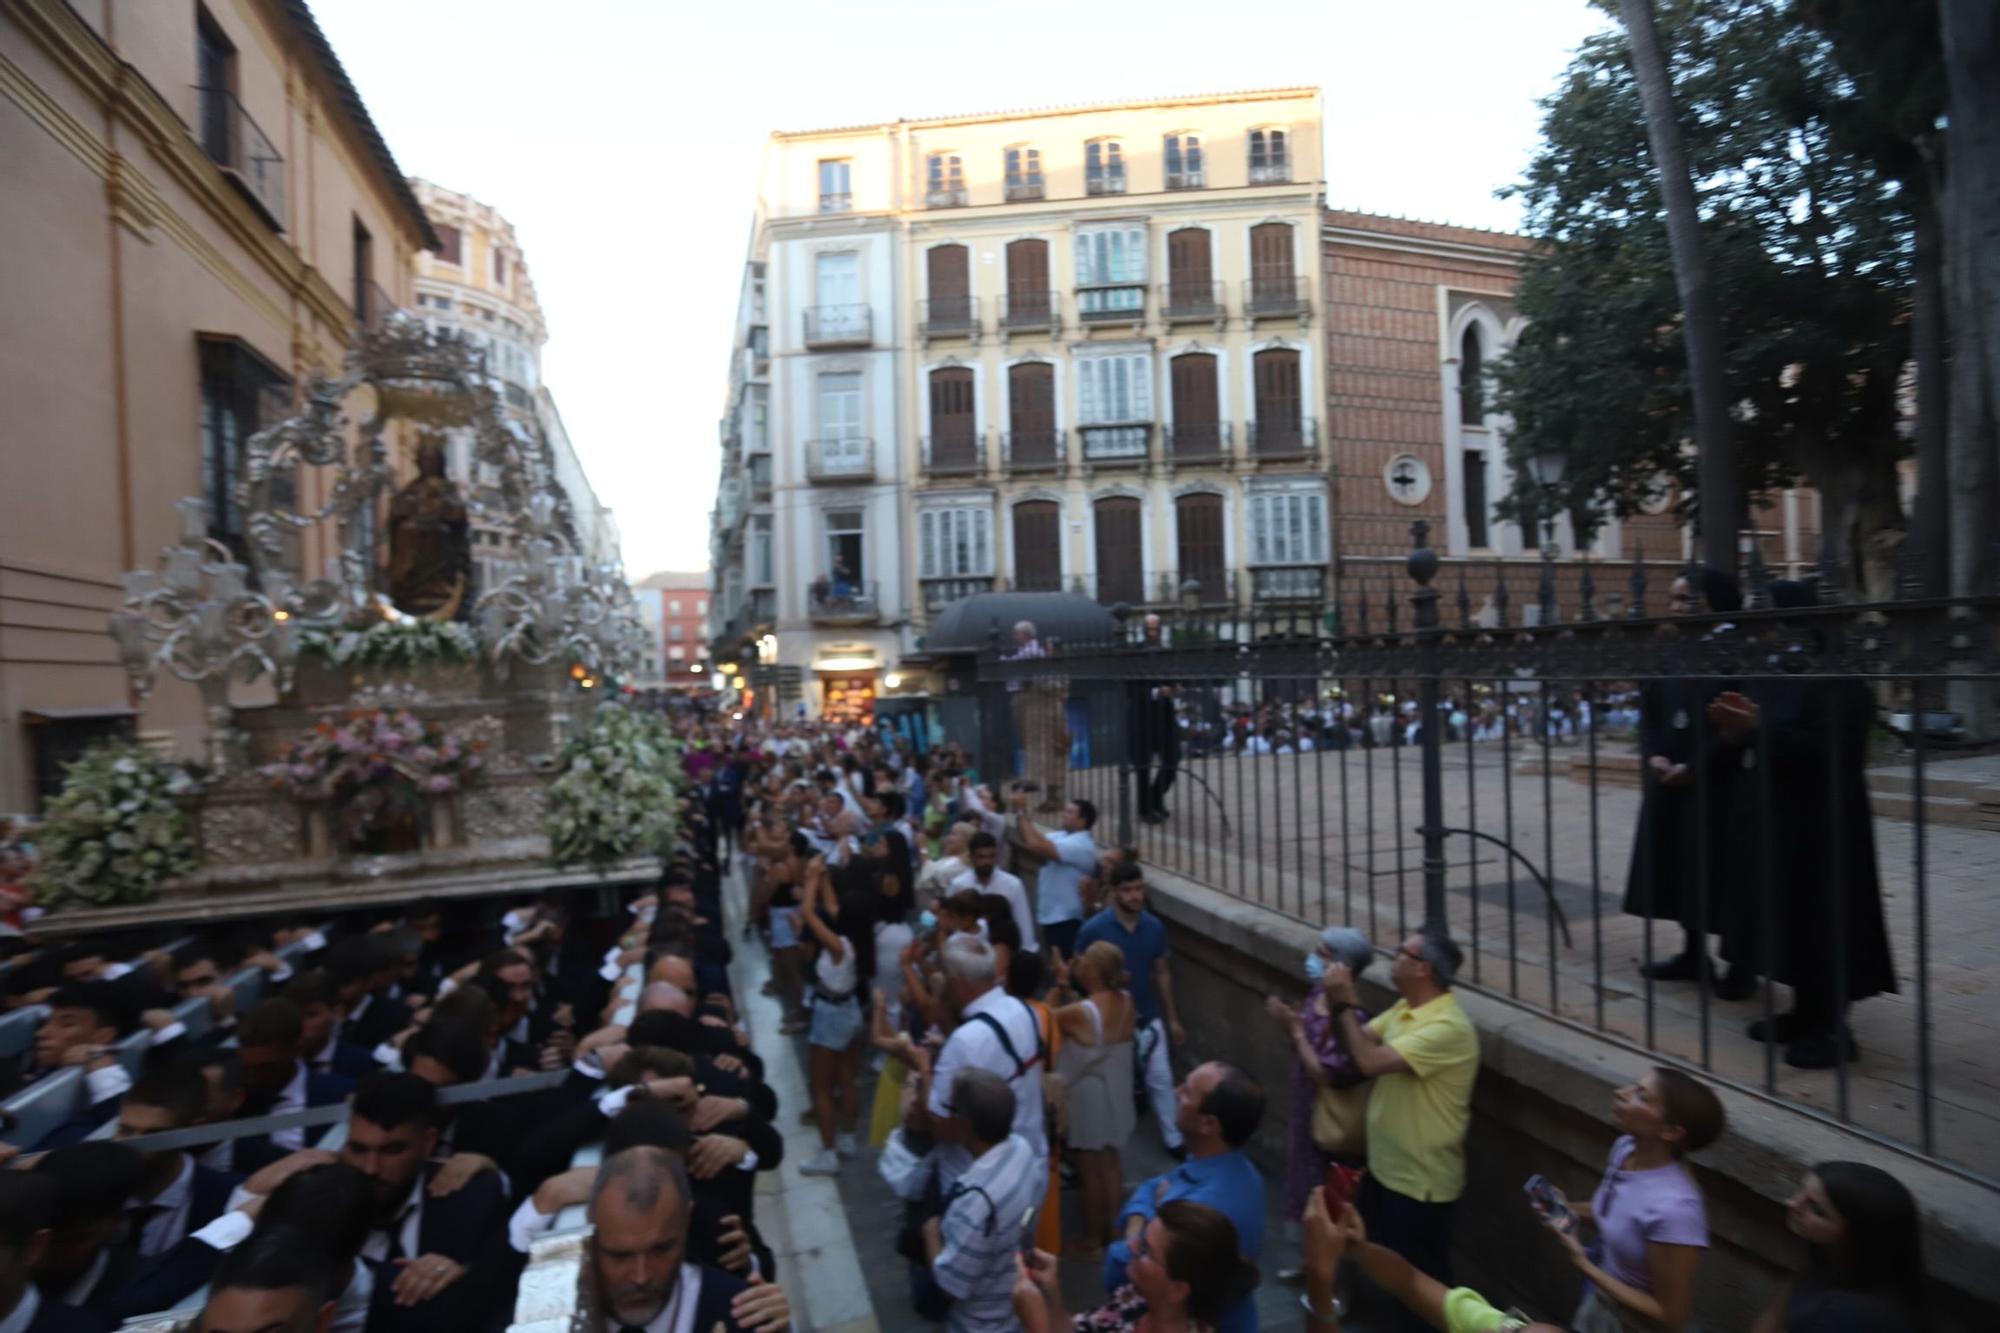 La patrona de Málaga, la Virgen de la Victoria, vuelve a procesionar por las calles de la ciudad